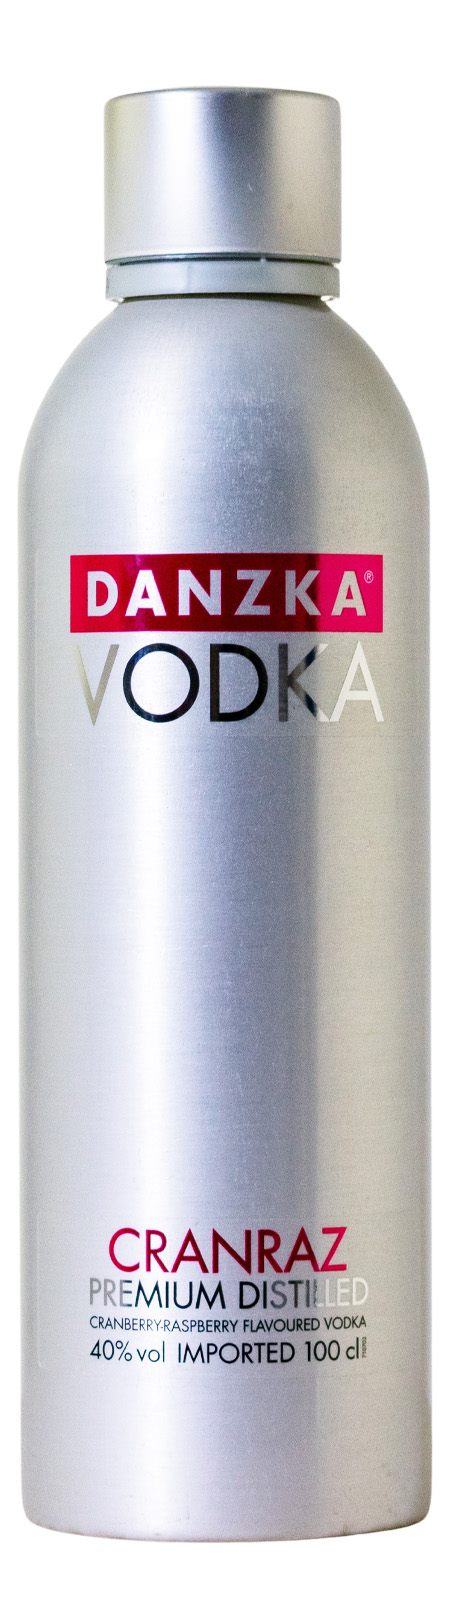 Danzka Danish Vodka günstig Cranraz (1L) kaufen